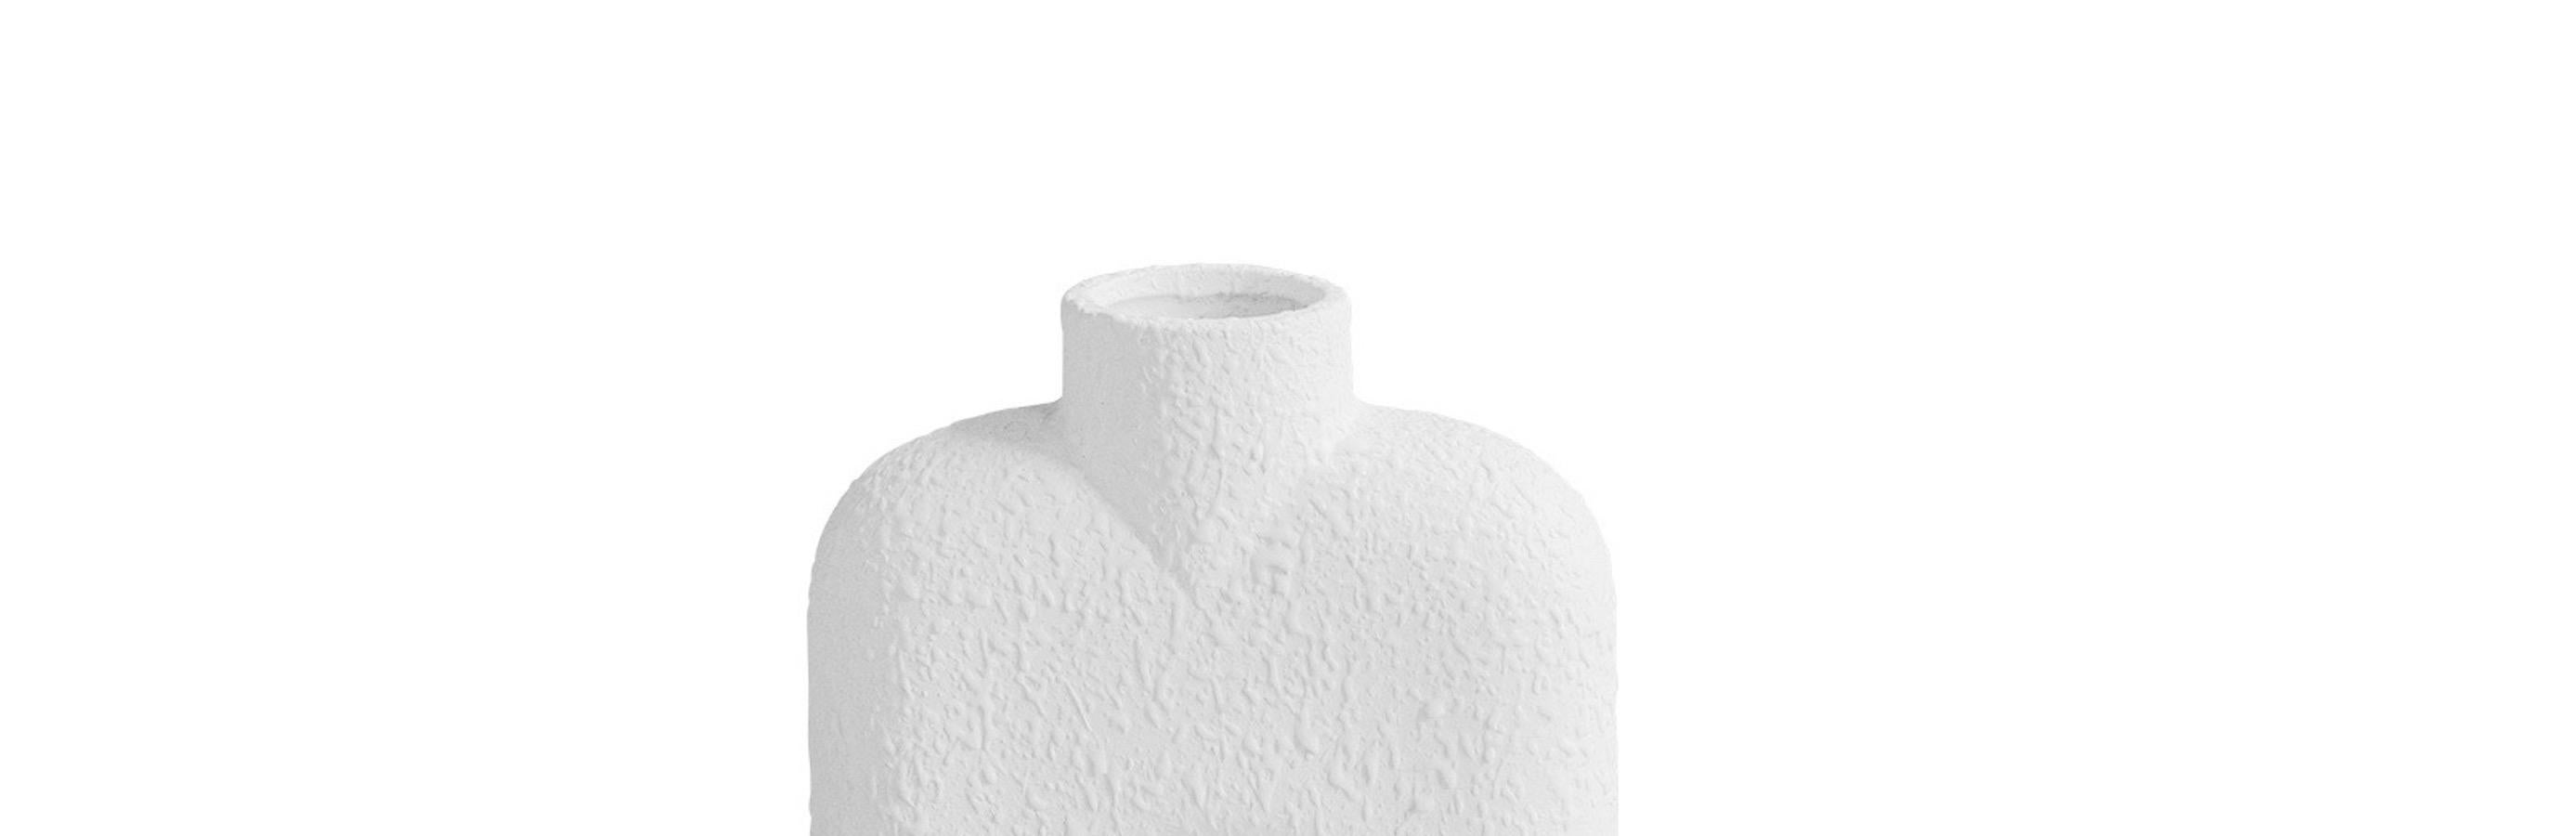 Hohe, strukturierte weiße Keramikvase im dänischen Design mit einer einzelnen runden Tülle in der Mitte auf einem Sockel aus zwei runden Kugeln.
Sehr skulpturales Design.
Zwei davon sind erhältlich und werden einzeln verkauft.
 

   